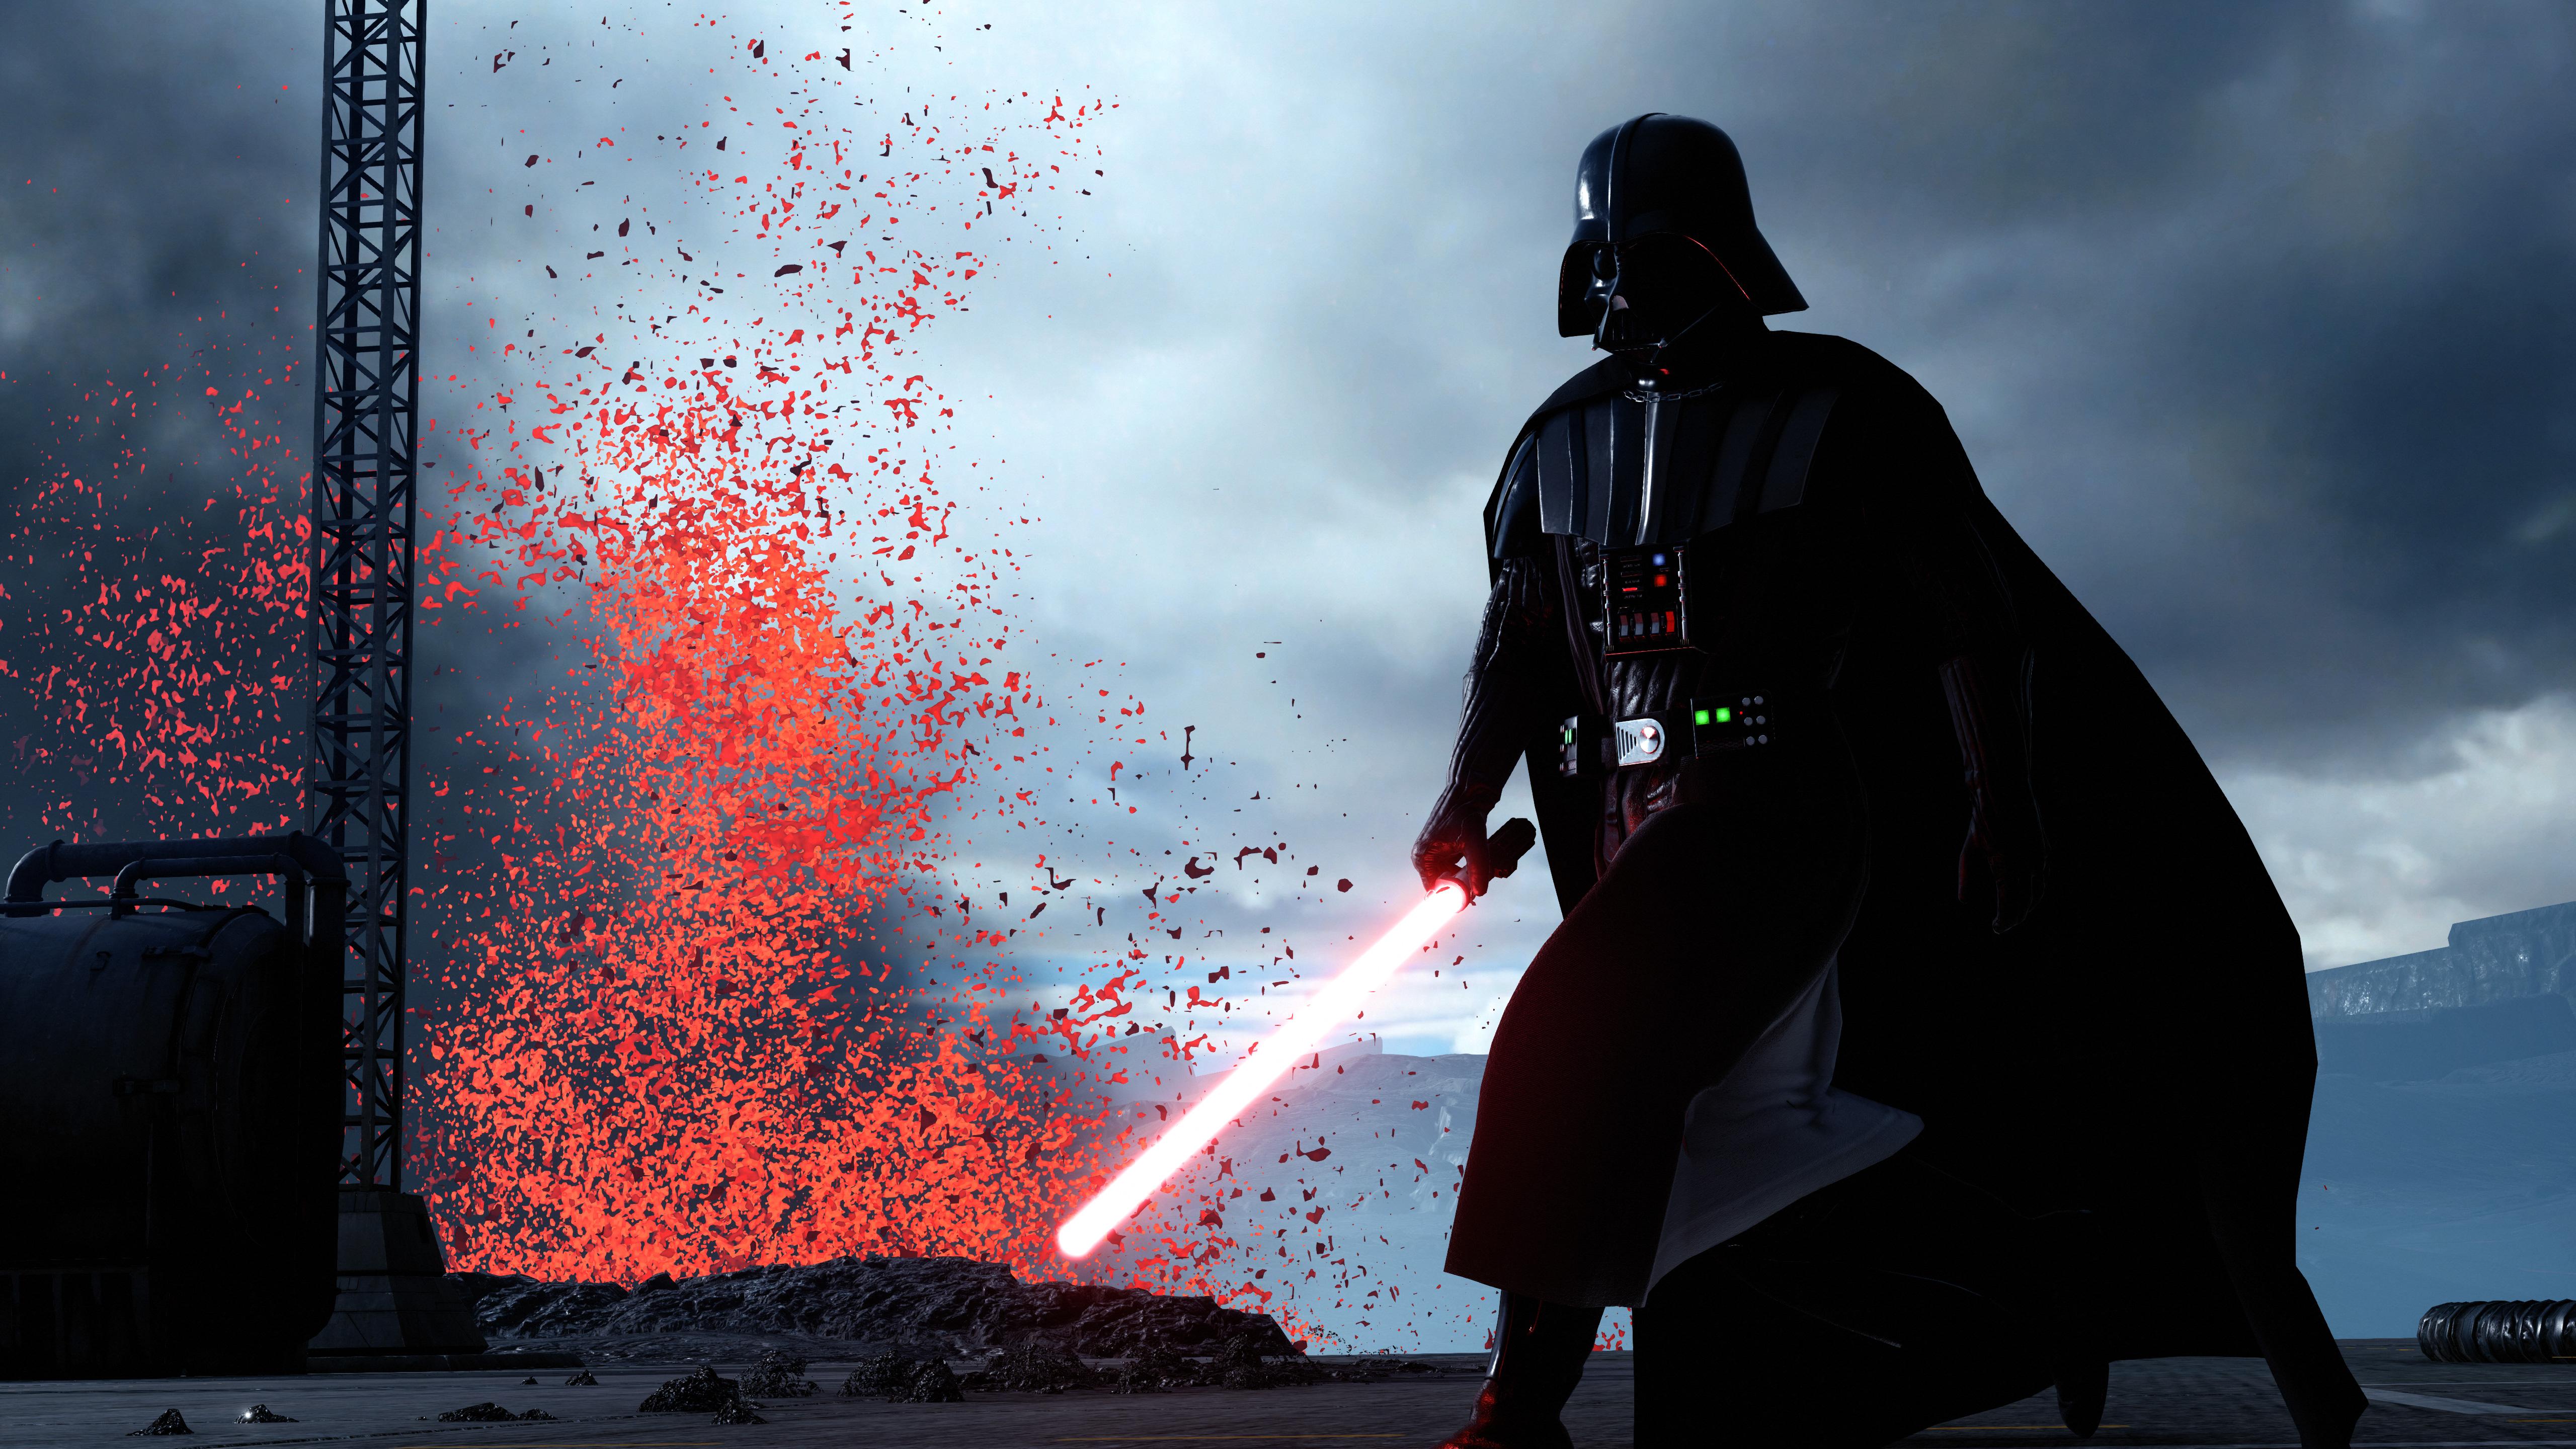 5120 x 2880 · jpeg - Darth Vader Star Wars Battlefront 5k, HD Games, 4k Wallpapers, Images ...